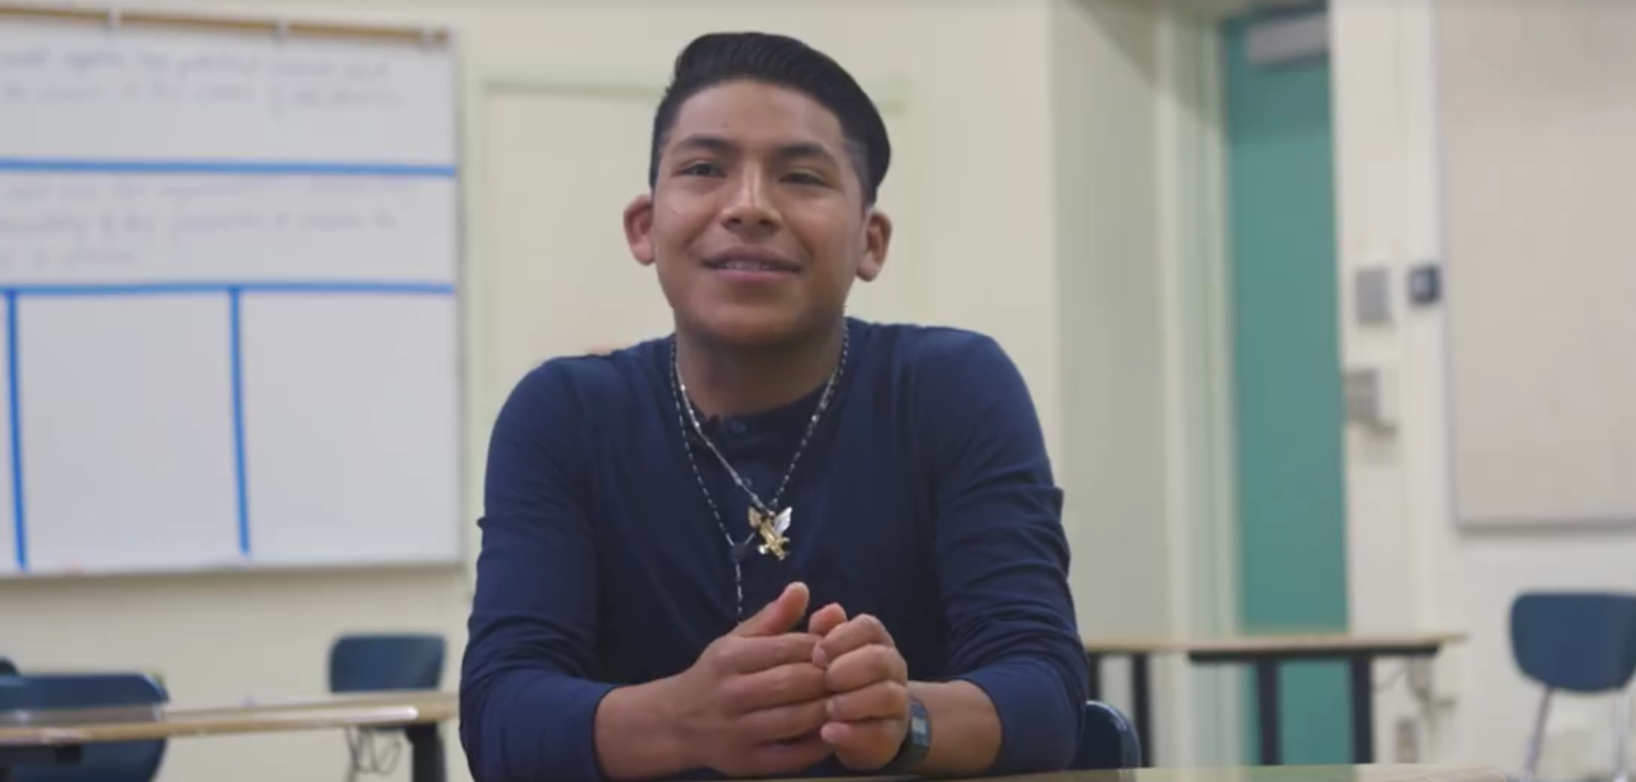 La història d’un noi immigrant commou els EUA